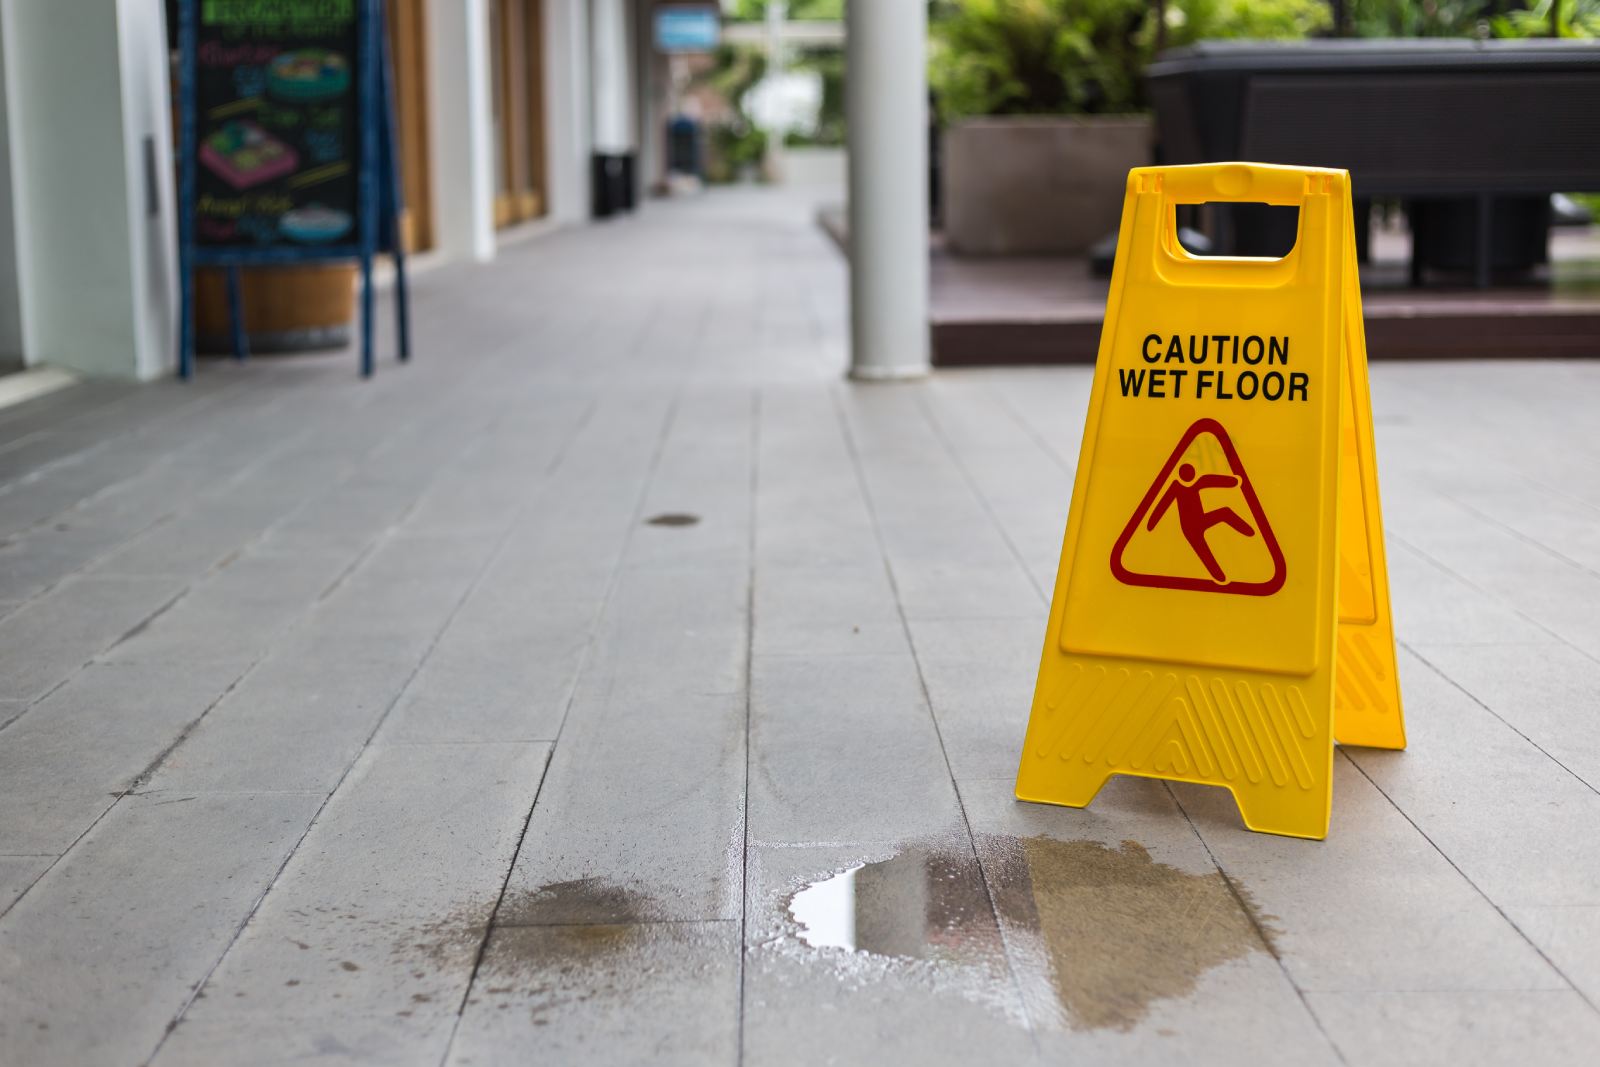 Caution Wet Floor sign on a wet floor